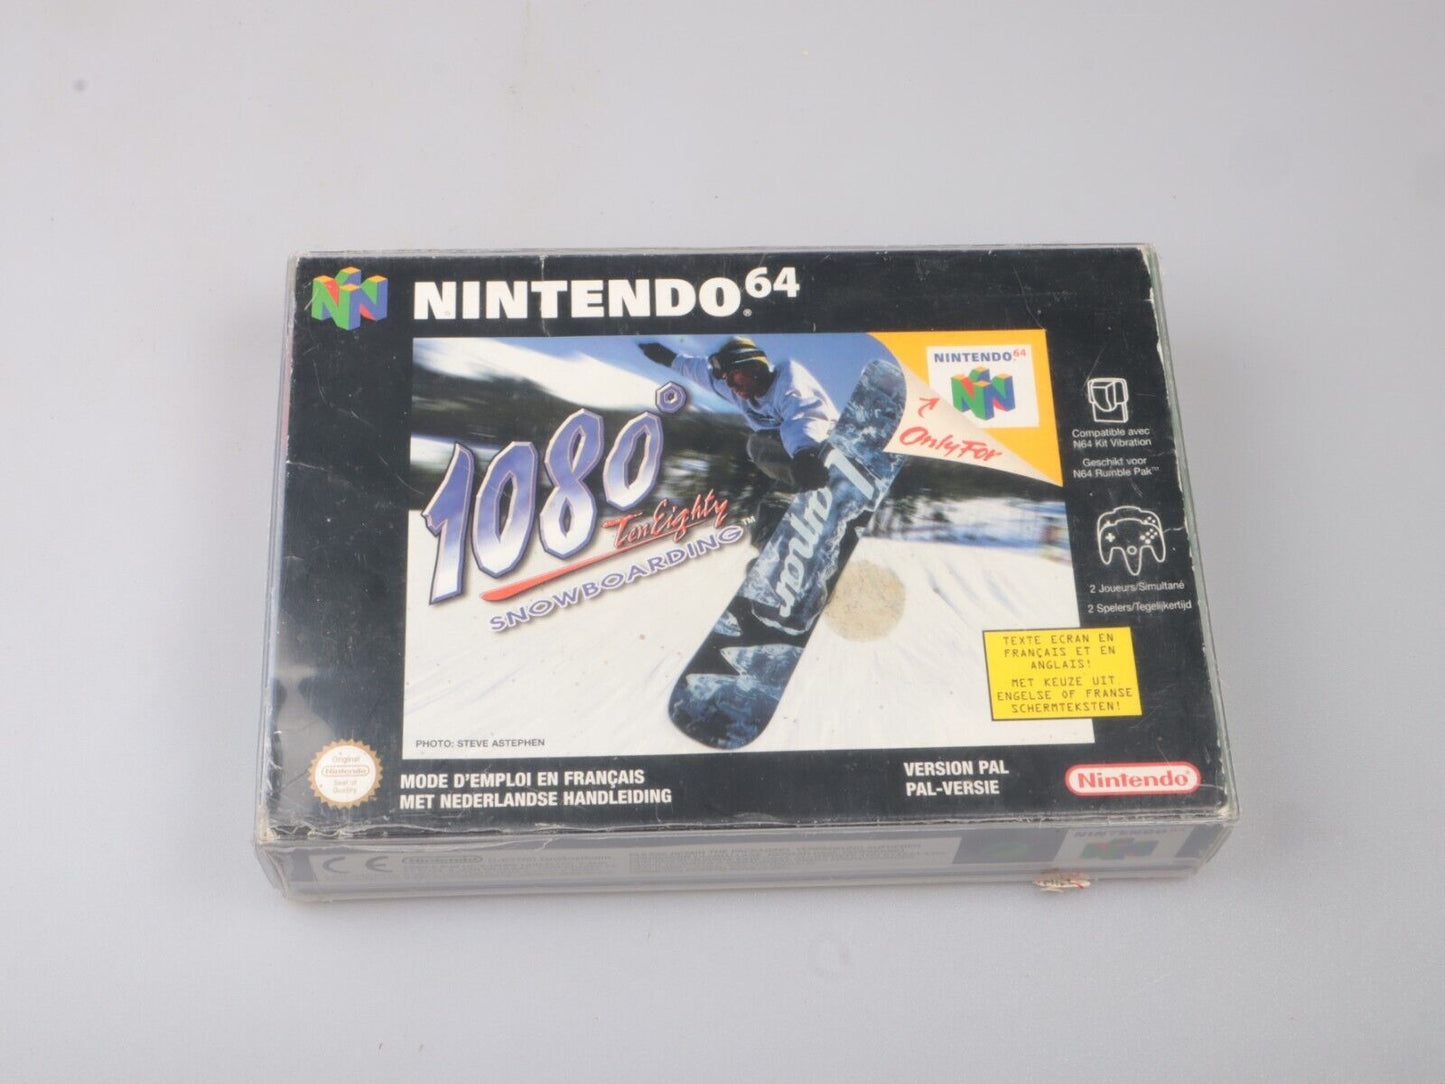 N64 | 1080° Sowboarding | Nintendo 64